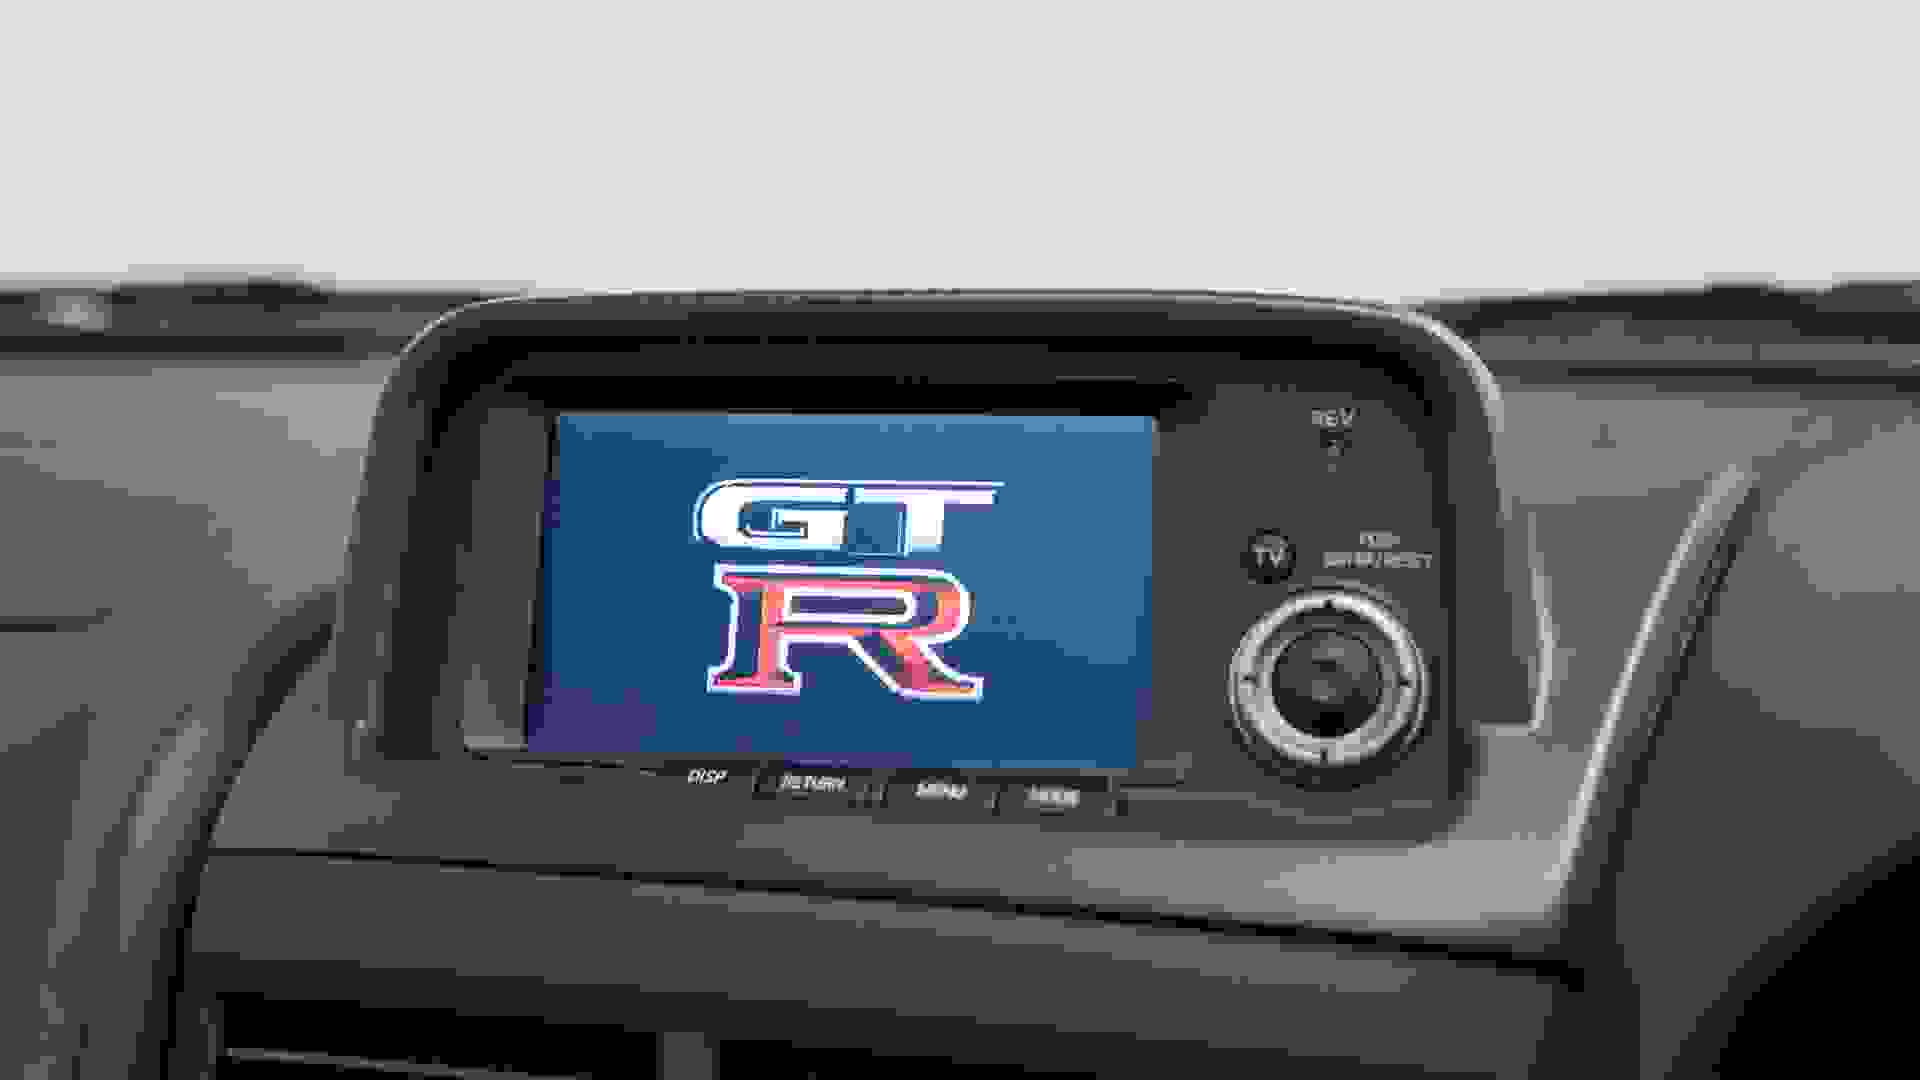 Nissan GT-R Photo be191e7a-5a5e-4d33-b1b0-278f226d7f0c.jpg